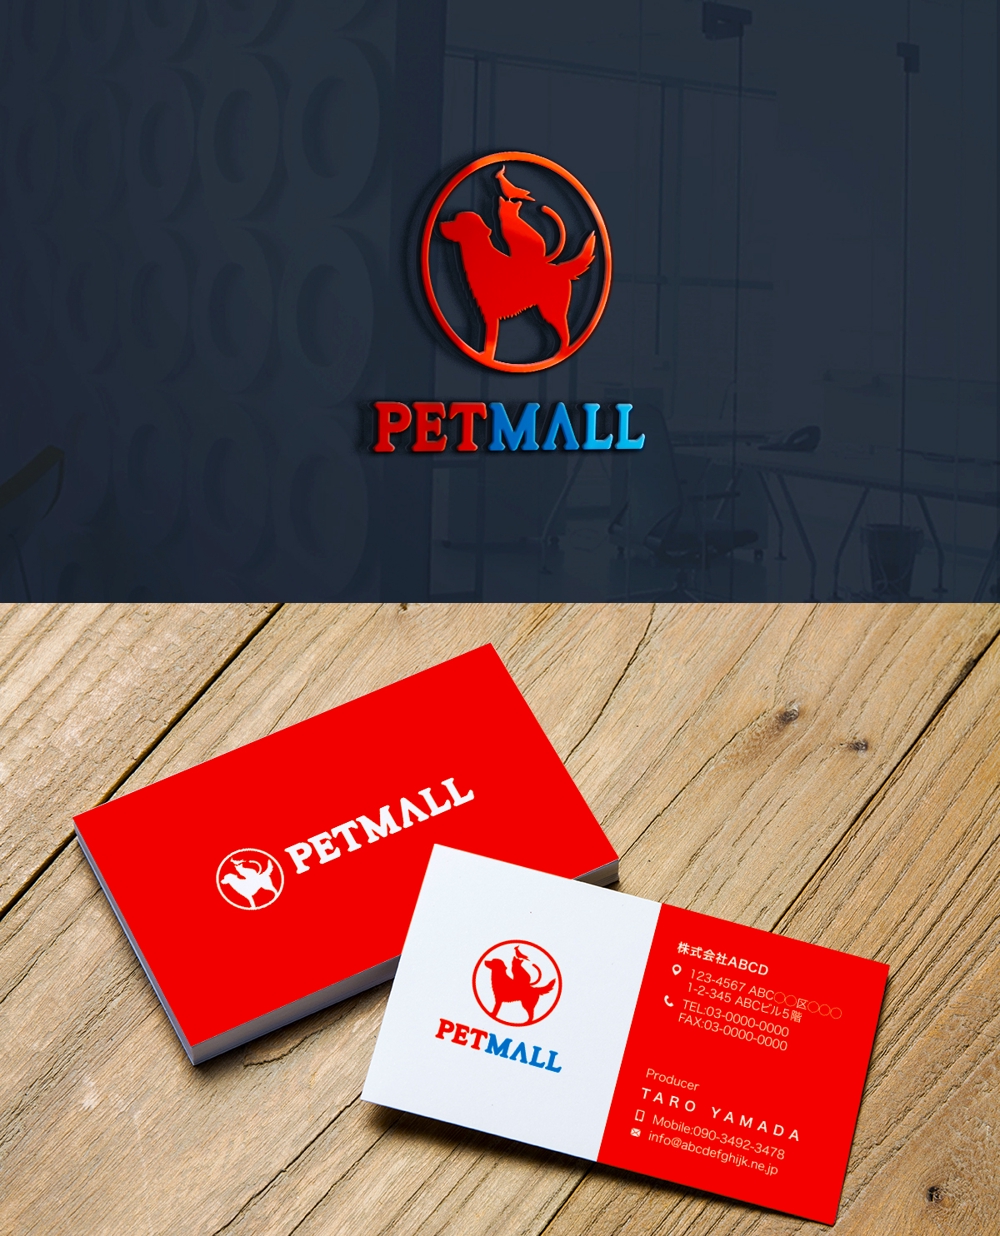 ペット用品通販サイト「Petmall」のロゴ